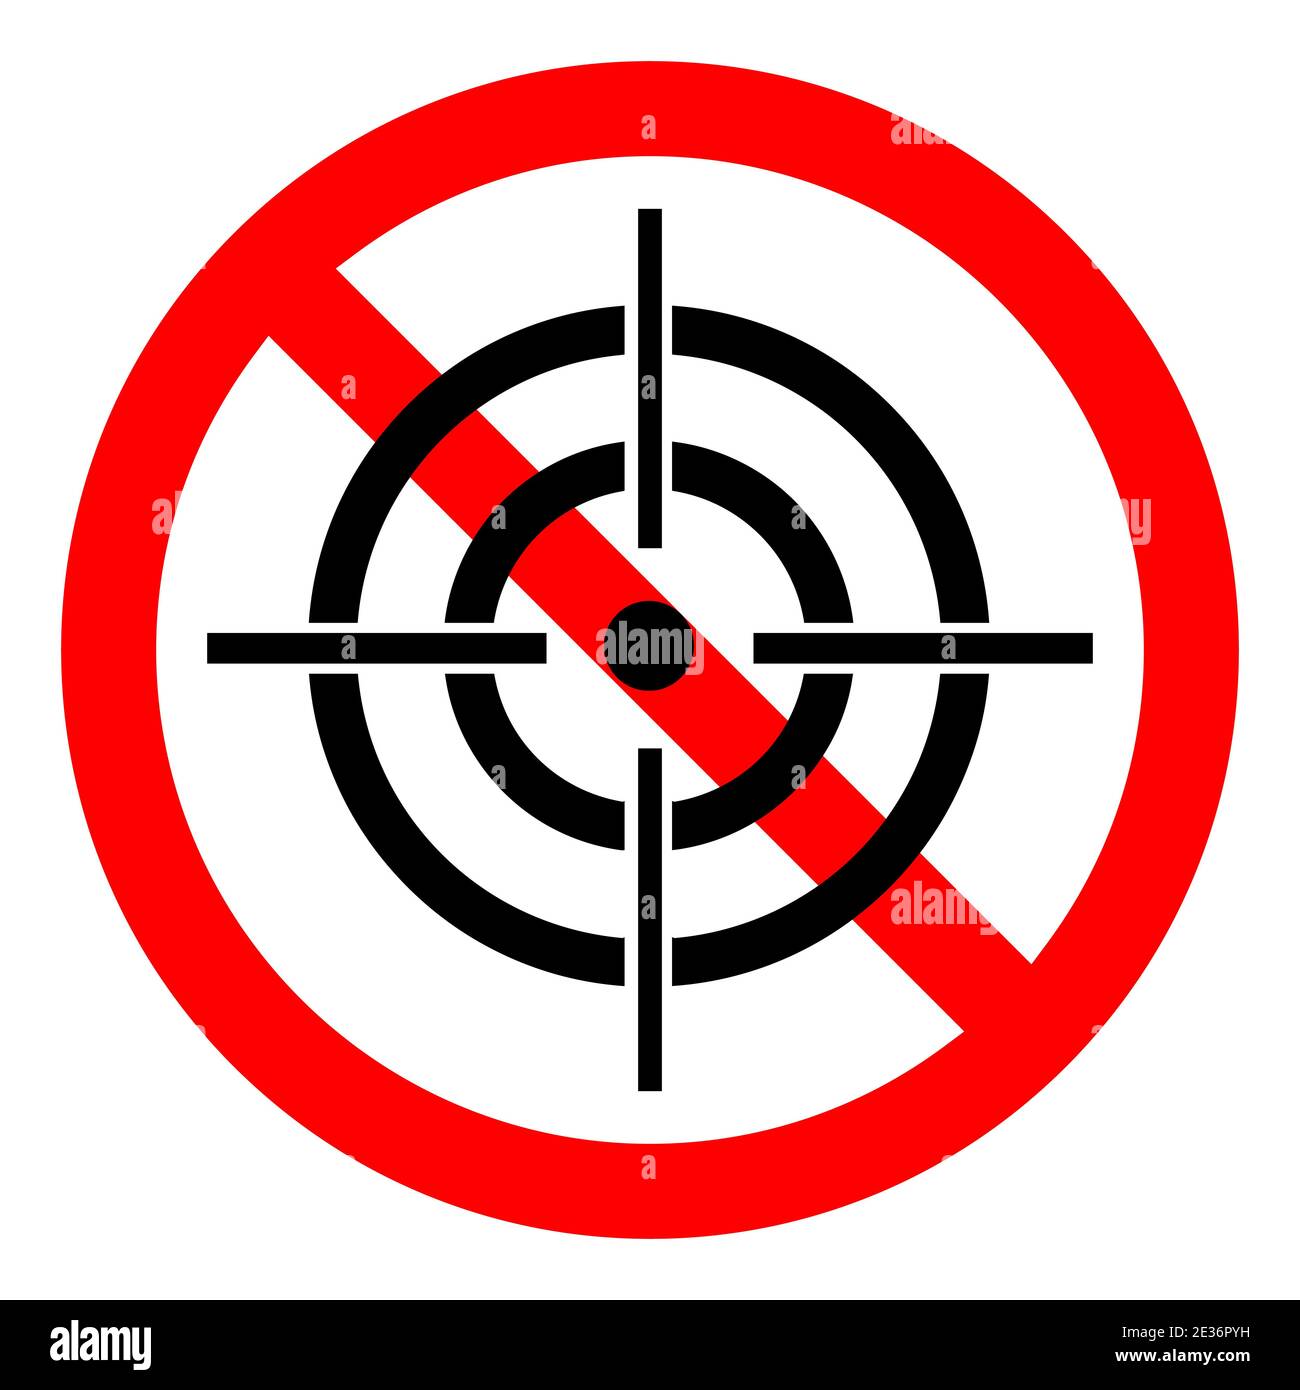 Symbol für Jagdverbot. Das Zielen ist verboten. Rotes Rundschild mit Zielsymbol stoppen oder sperren. Vektorgrafik. Kein AIM-Symbol. Stock Vektor